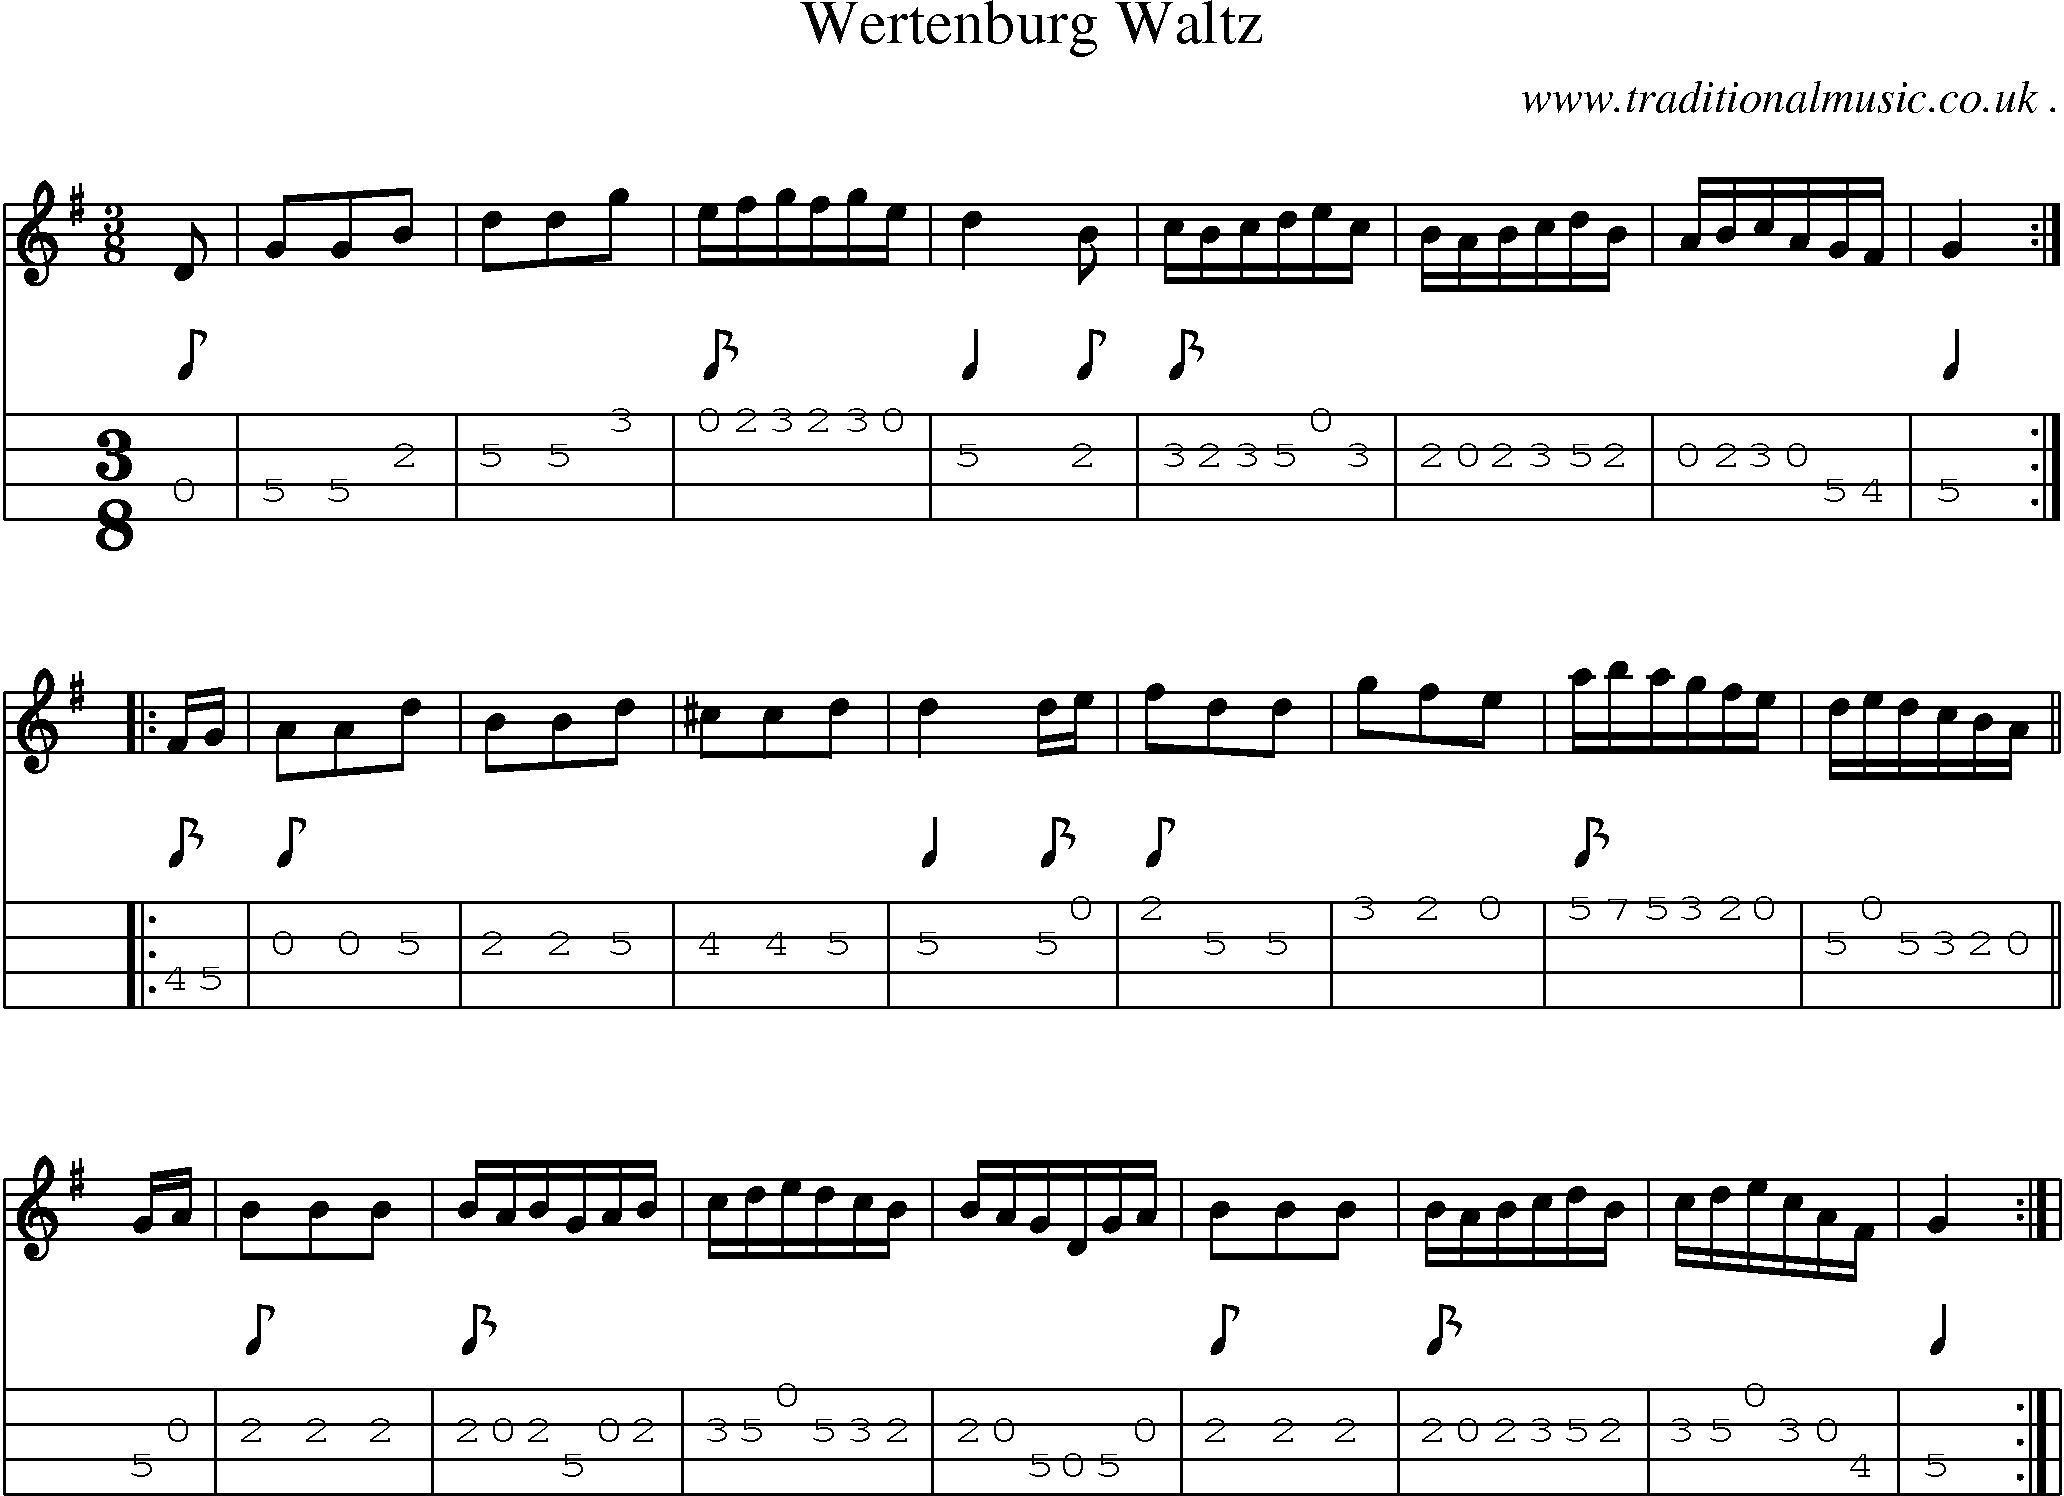 Sheet-Music and Mandolin Tabs for Wertenburg Waltz